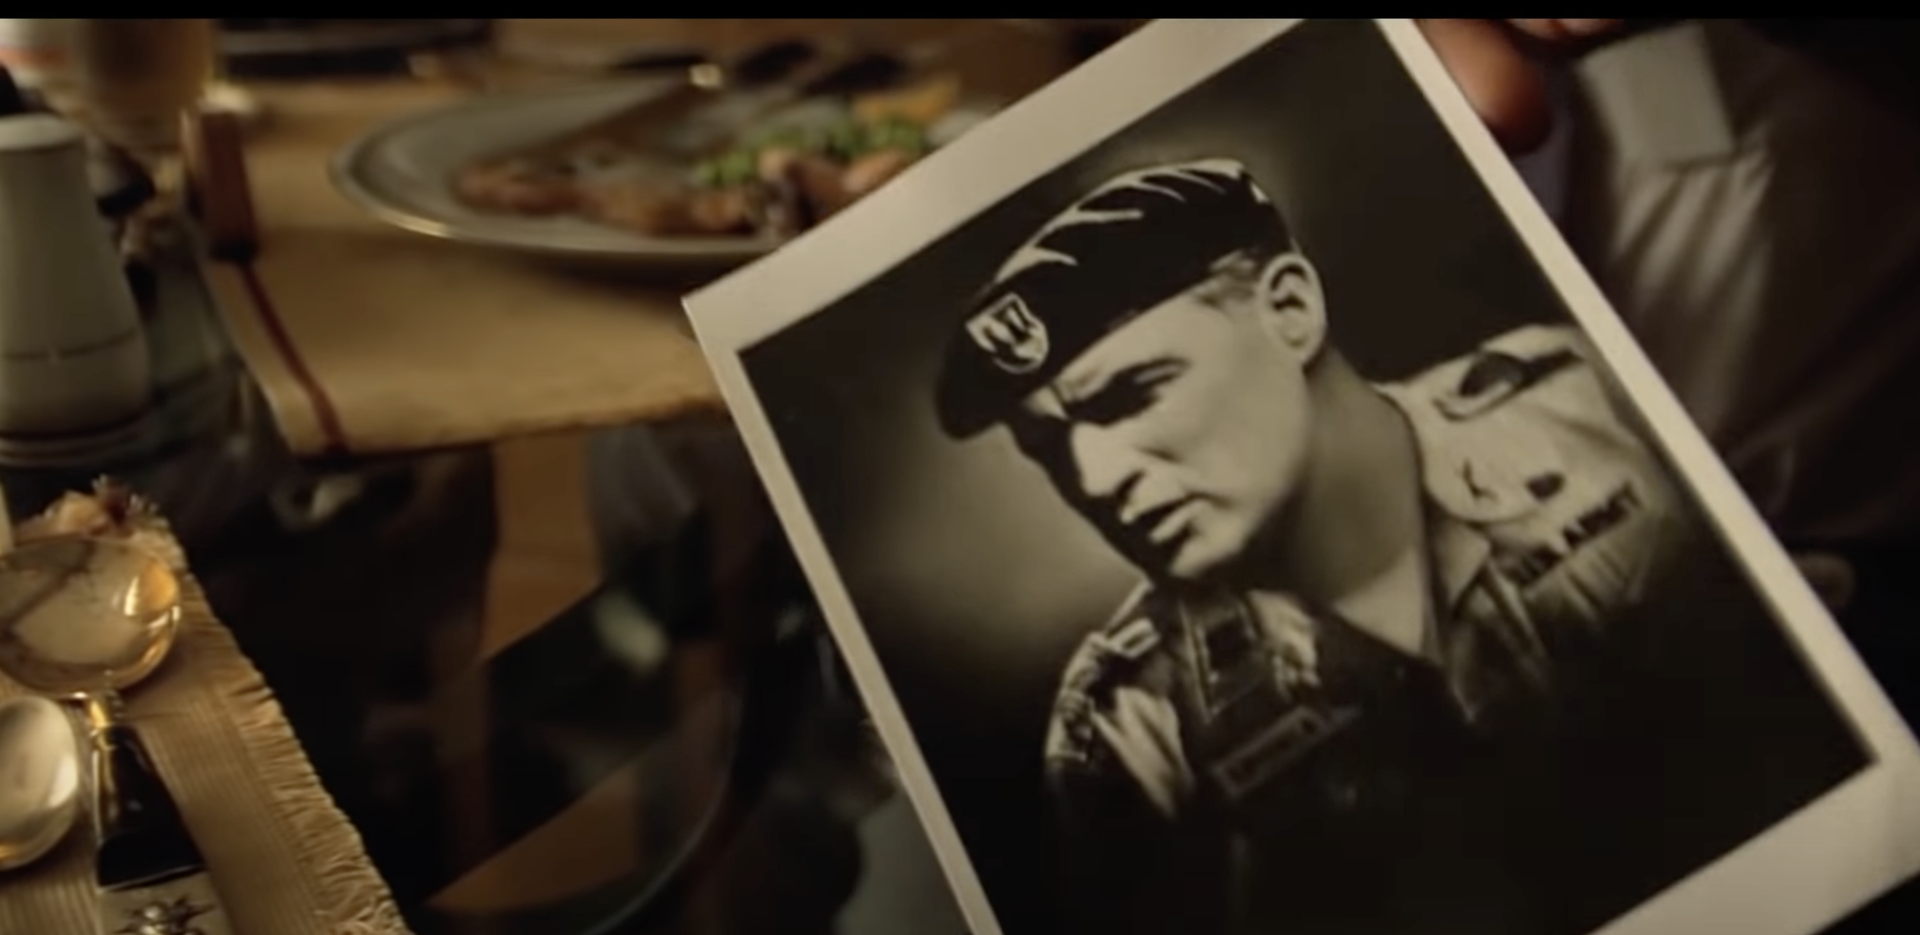 Zdjęcie przedstawia fotografię młodego żołnierza w mundurze i z beretem na głowie. Za fotografią znajduje się stół, na którym są sztućce, szklanki i talerz z jedzeniem.